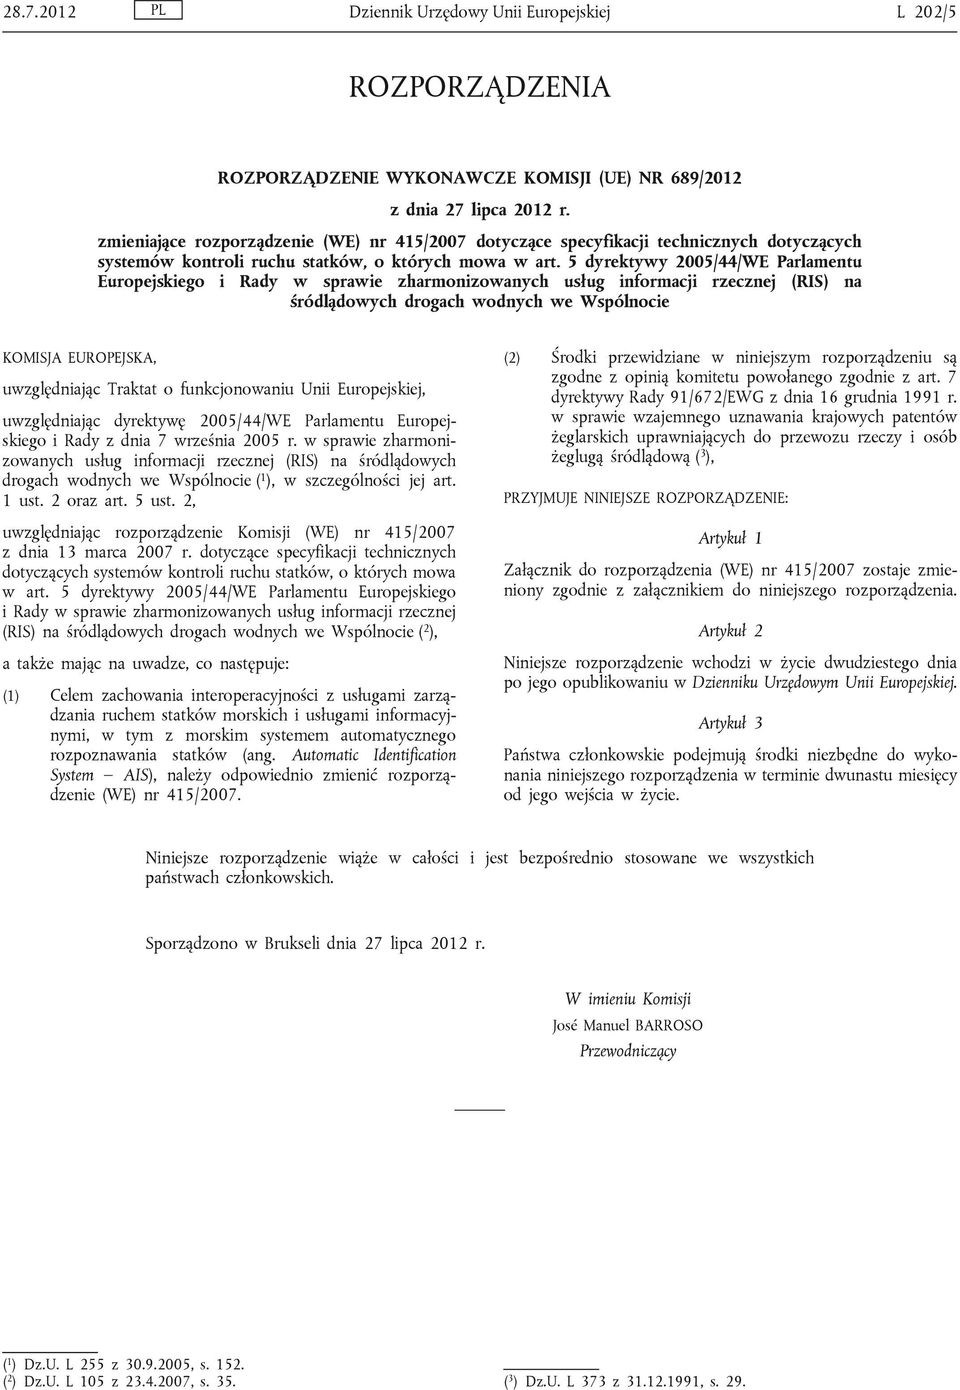 5 dyrektywy 2005/44/WE Parlamentu Europejskiego i Rady w sprawie zharmonizowanych usług informacji rzecznej (RIS) na śródlądowych drogach wodnych we Wspólnocie KOMISJA EUROPEJSKA, uwzględniając